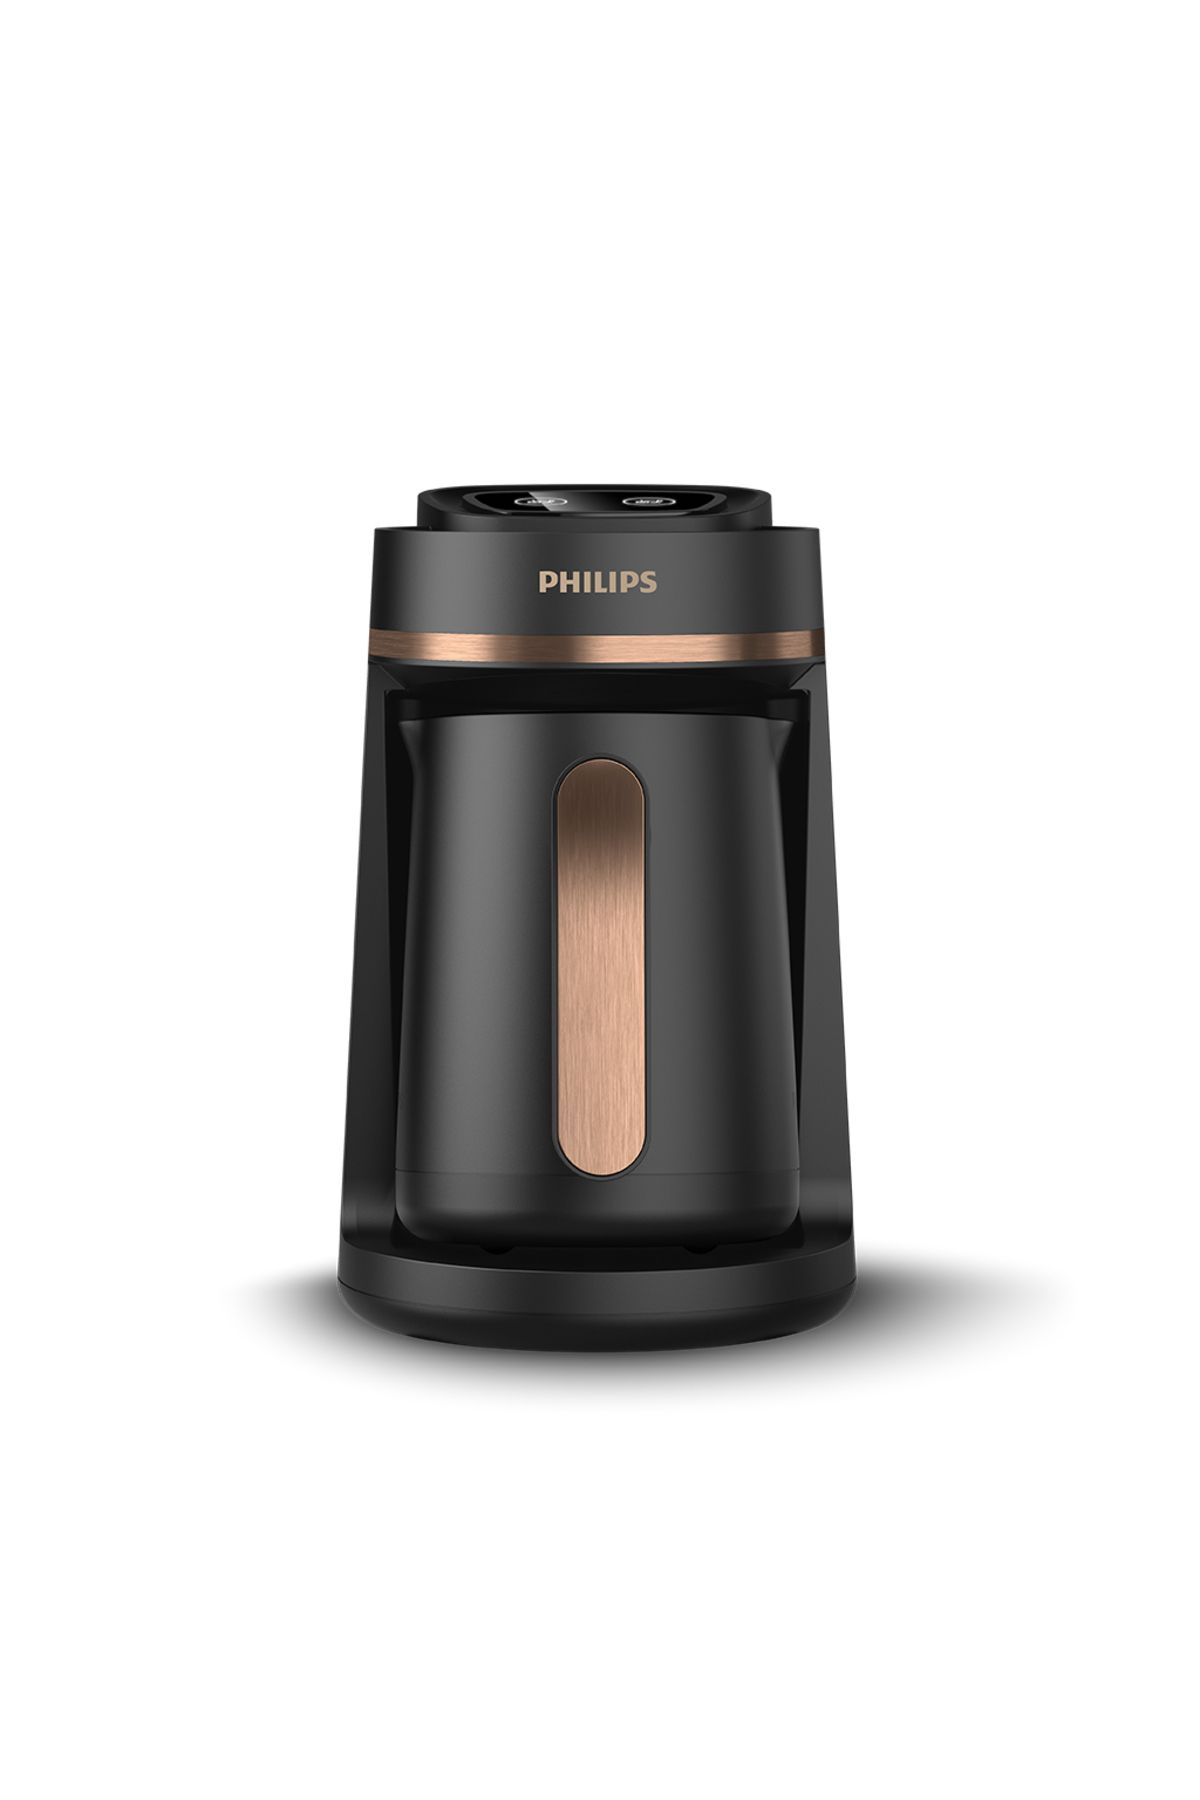 Philips Türk Kahvesi Makinesi, 4 Kişilik, Közde Pişirme Özelliği, HDA150/60